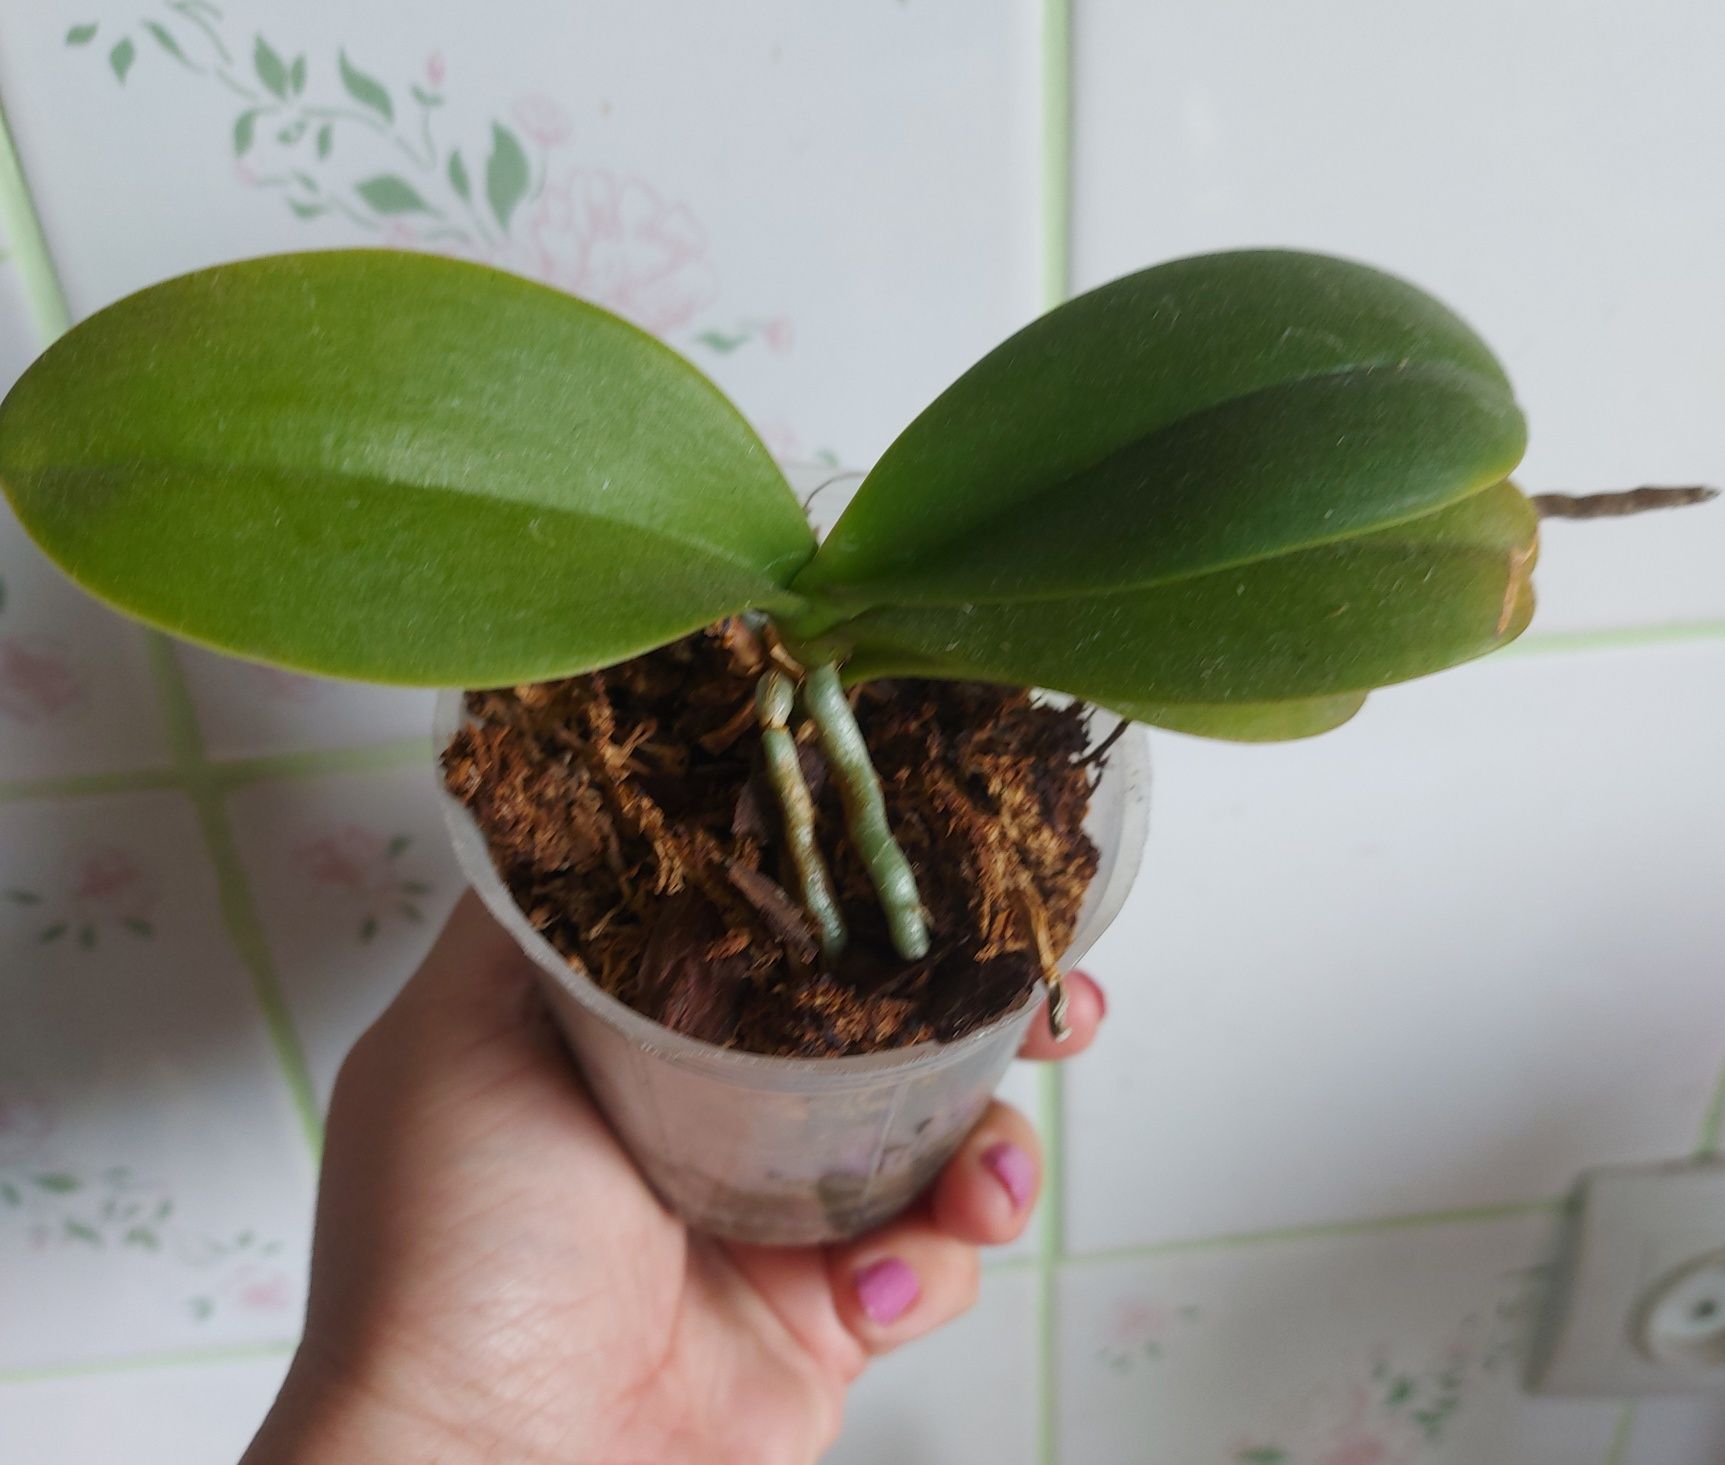 Орхидея  Долматинец